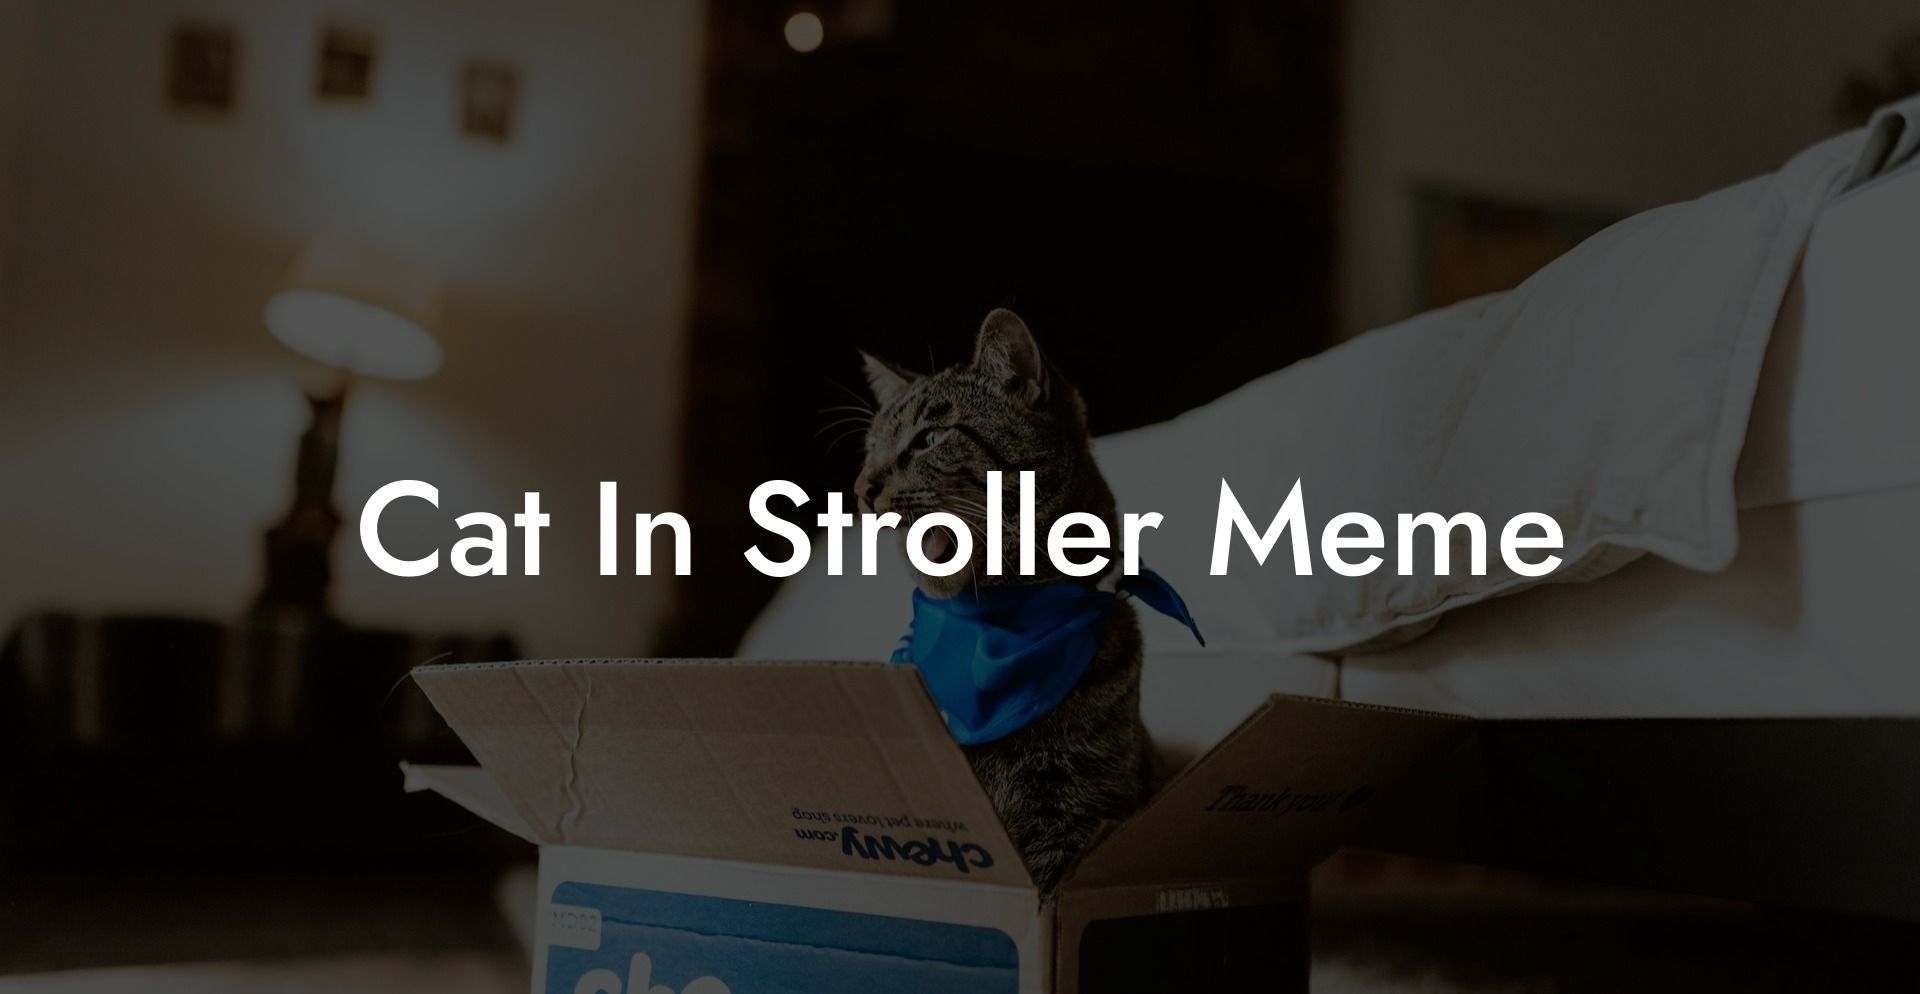 Cat In Stroller Meme